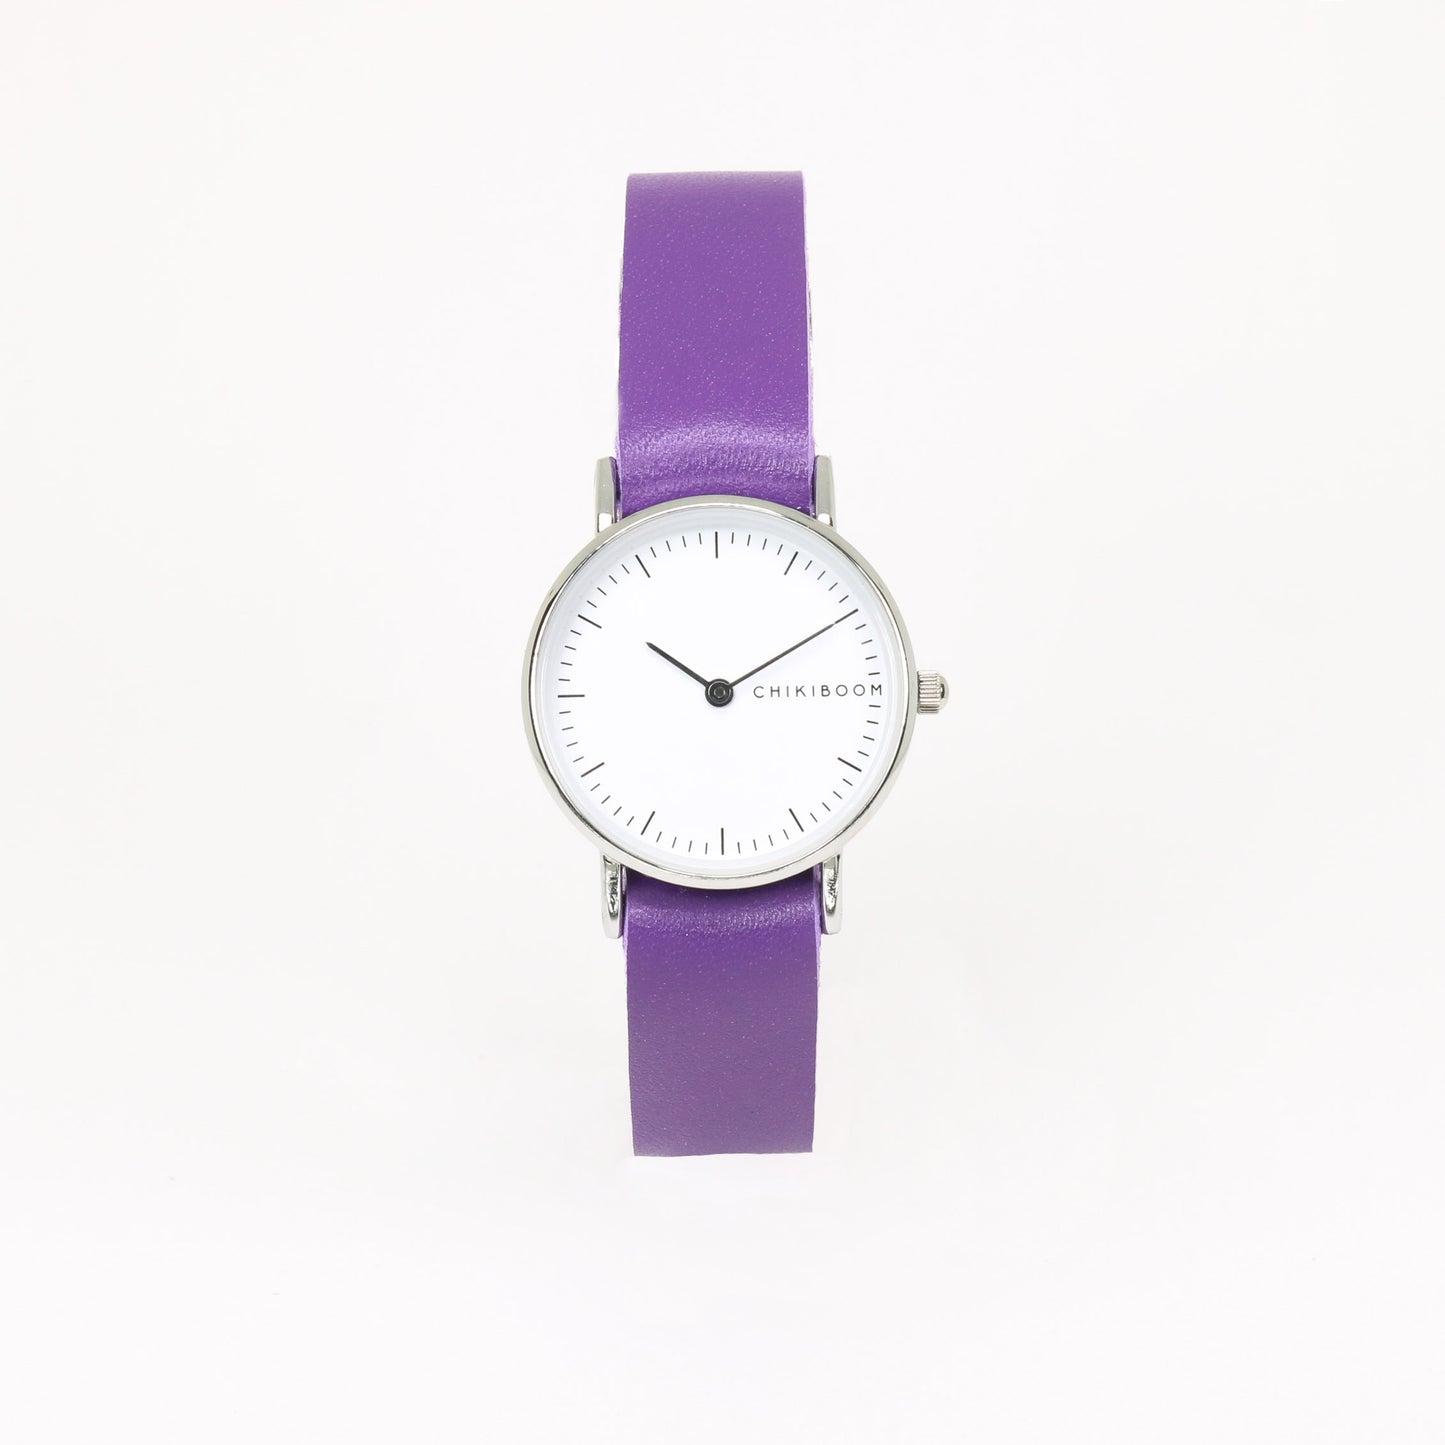 Purple / white women's watch